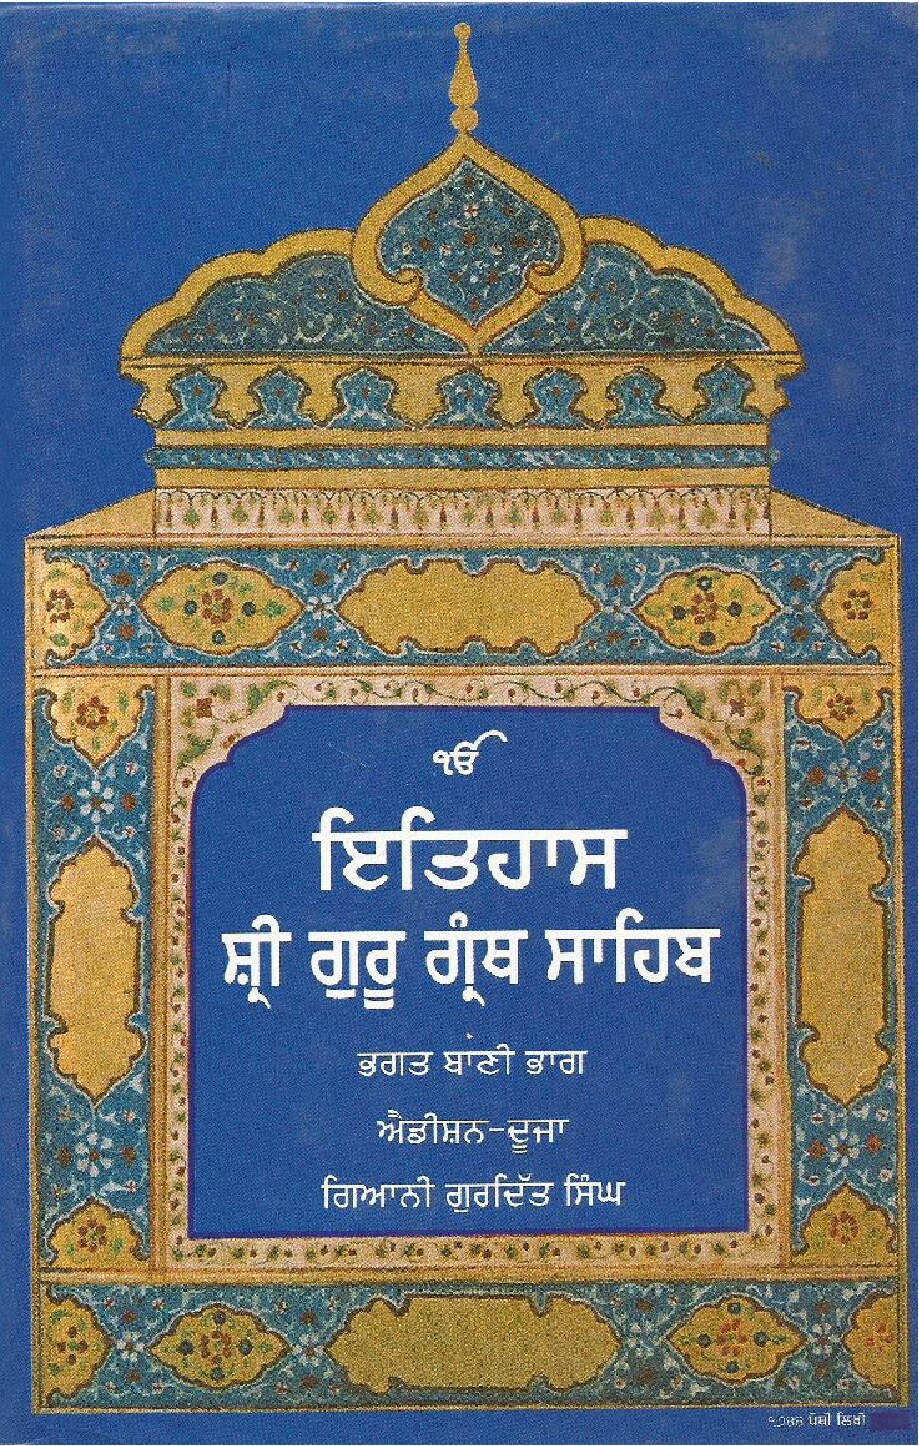 ਇਤਿਹਾਸ ਸ਼੍ਰੀ ਗੁਰੂ ਗੰਥ ਸਾਹਿਬ -  History of Sri Guru Granth Sahib